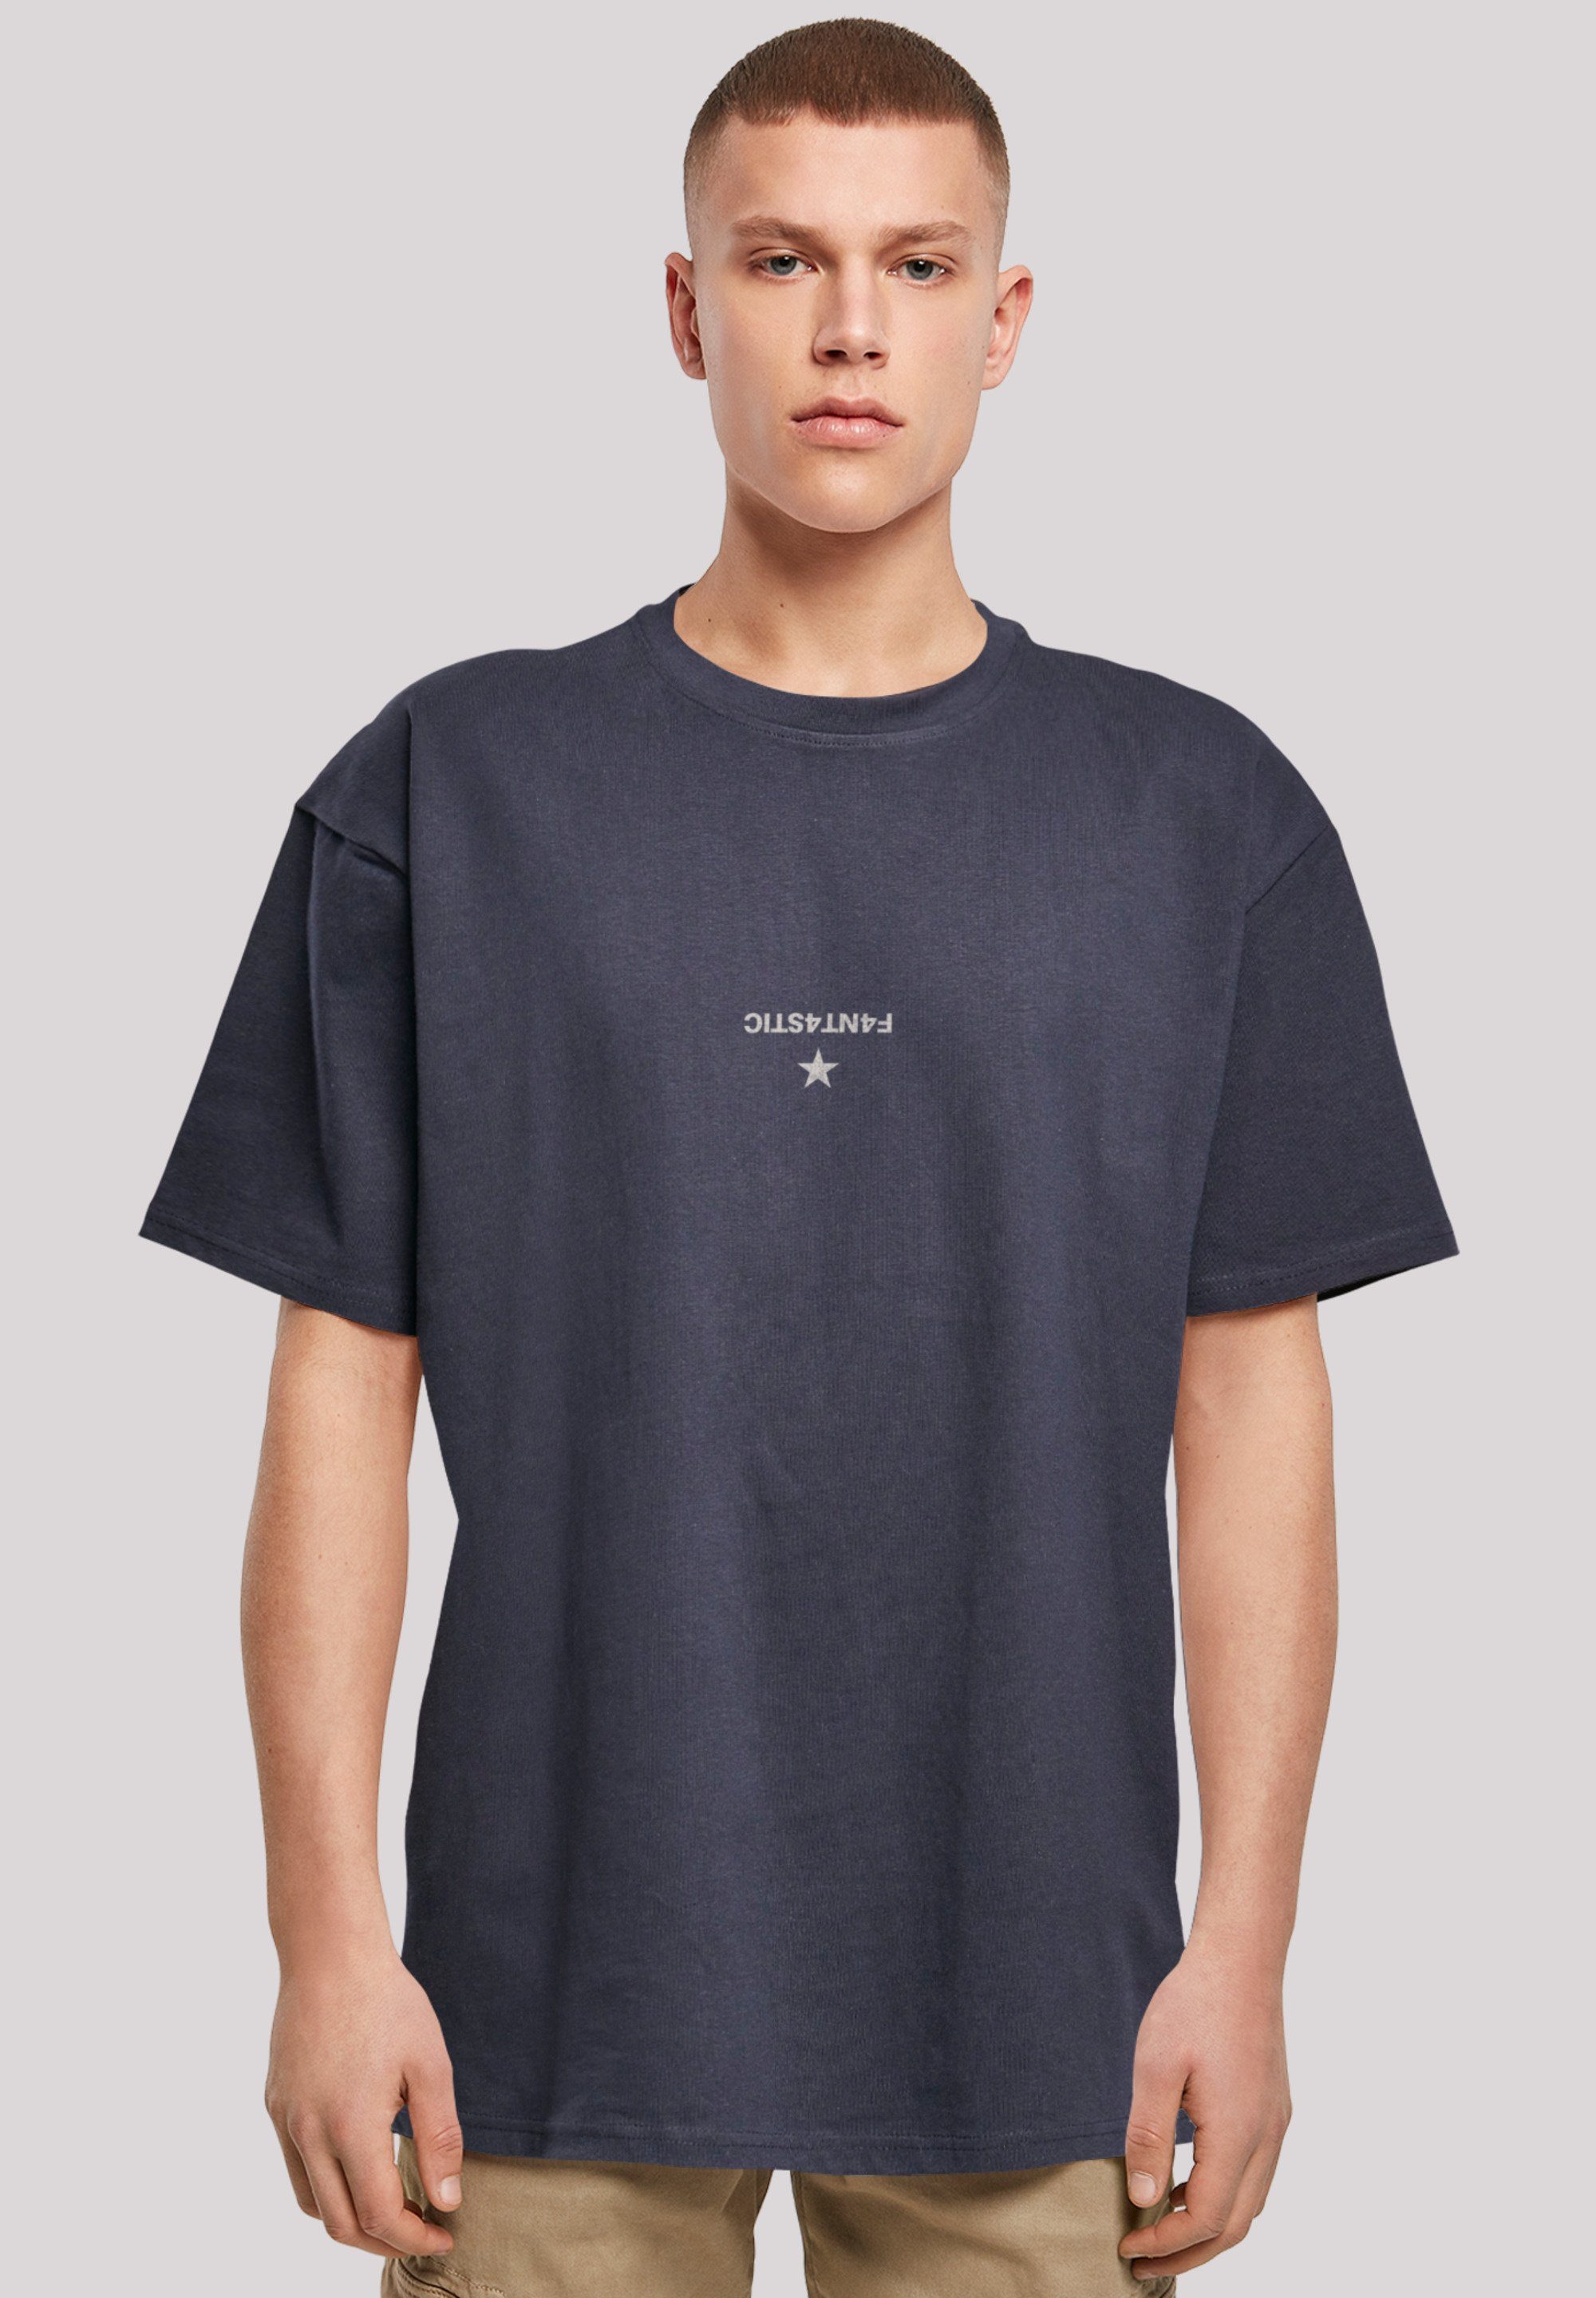 Geometric Print Abstract navy T-Shirt F4NT4STIC